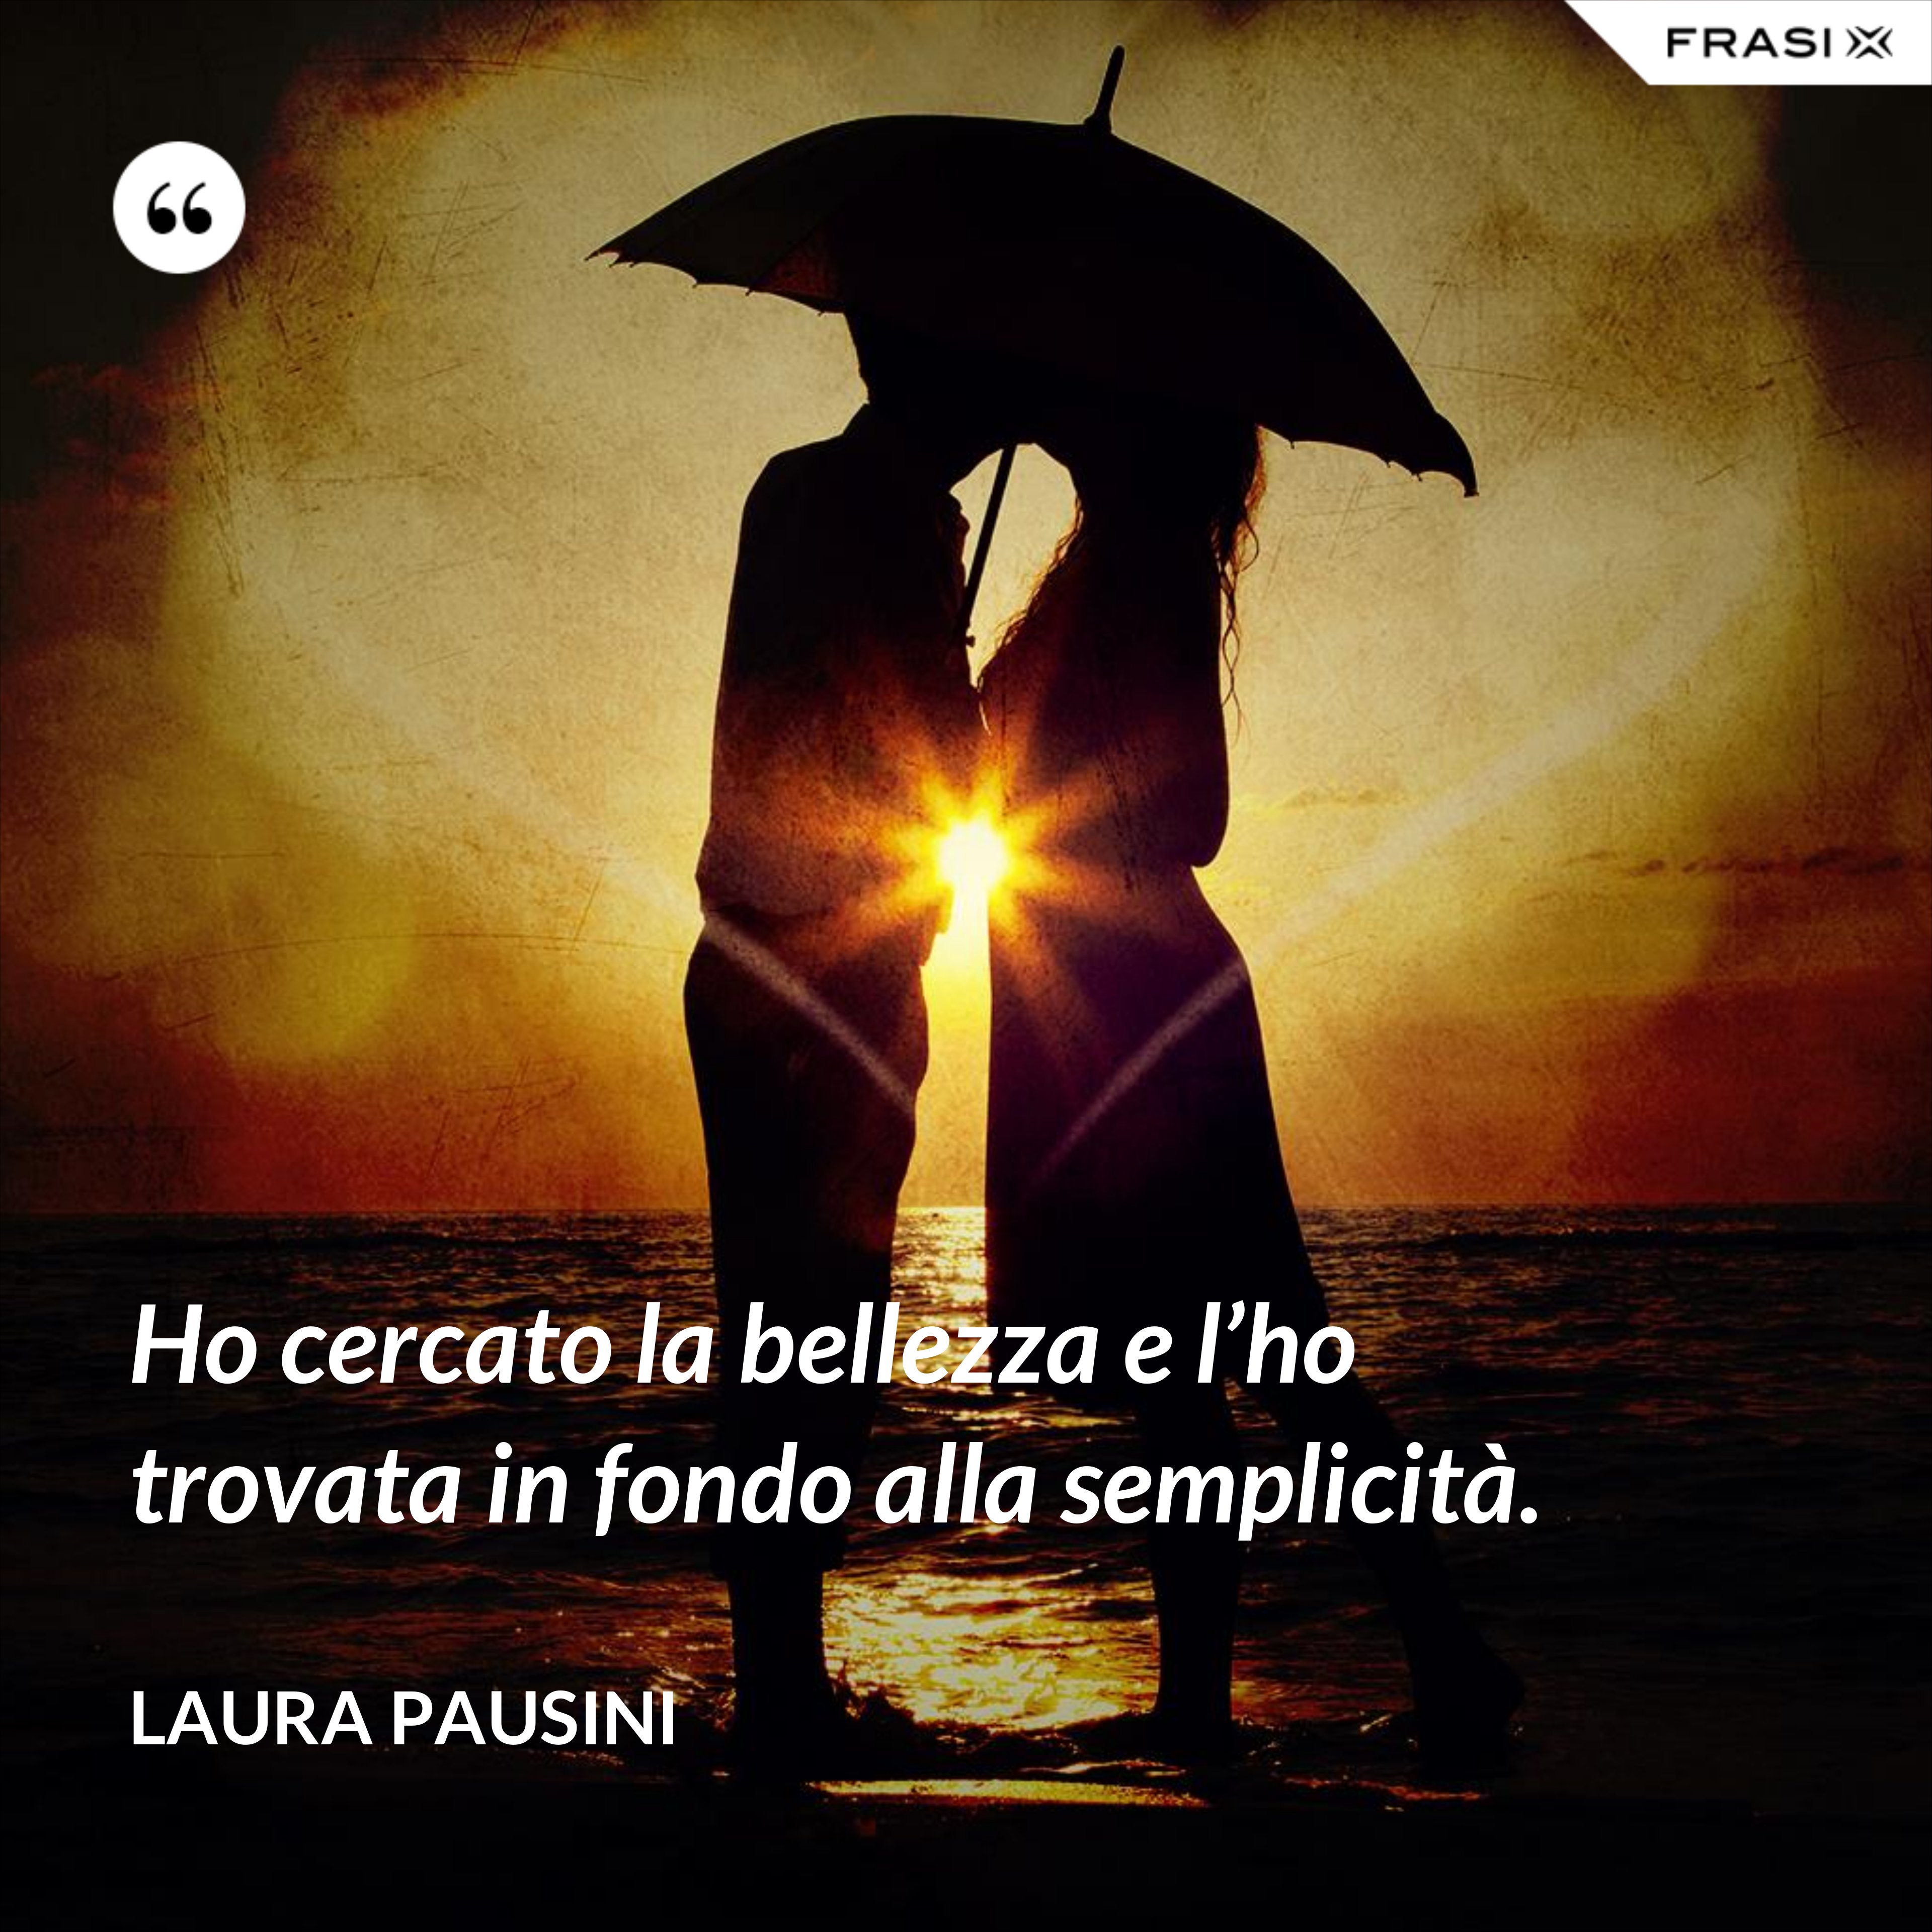 Ho cercato la bellezza e l’ho trovata in fondo alla semplicità. - Laura Pausini